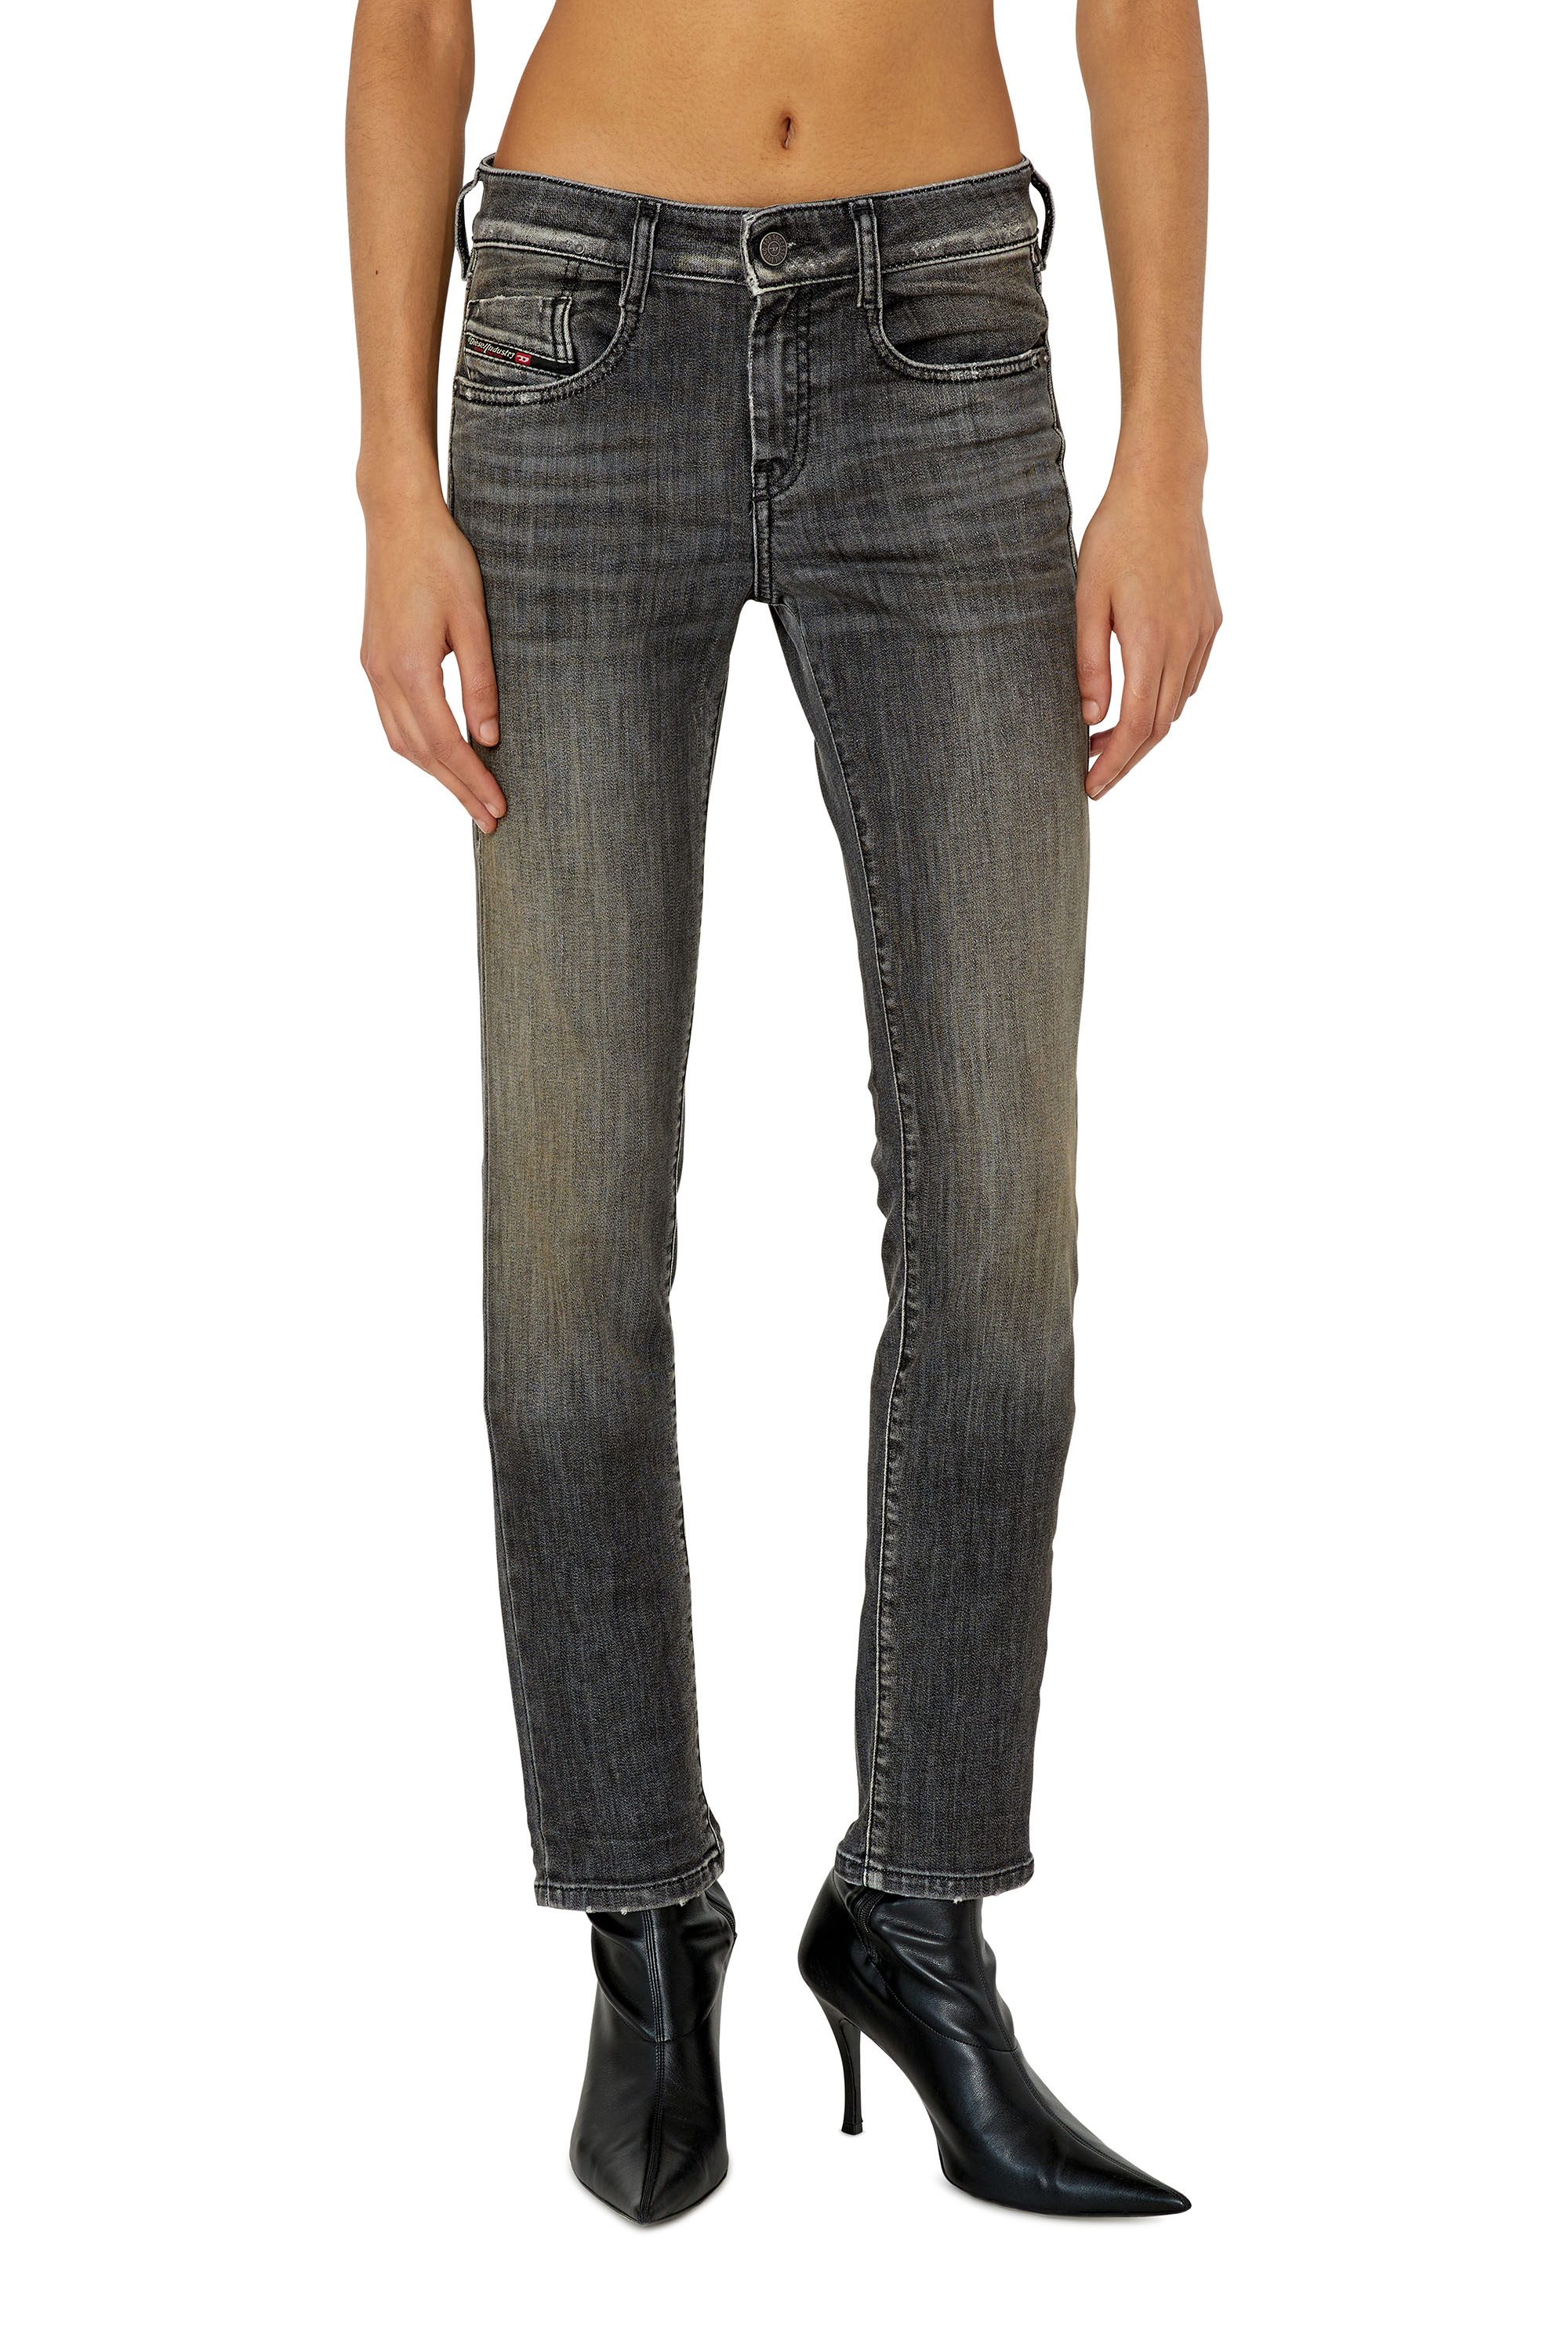 Diesel - Slim D-Ollies JoggJeans® 09F01, Black/Dark grey - Image 1